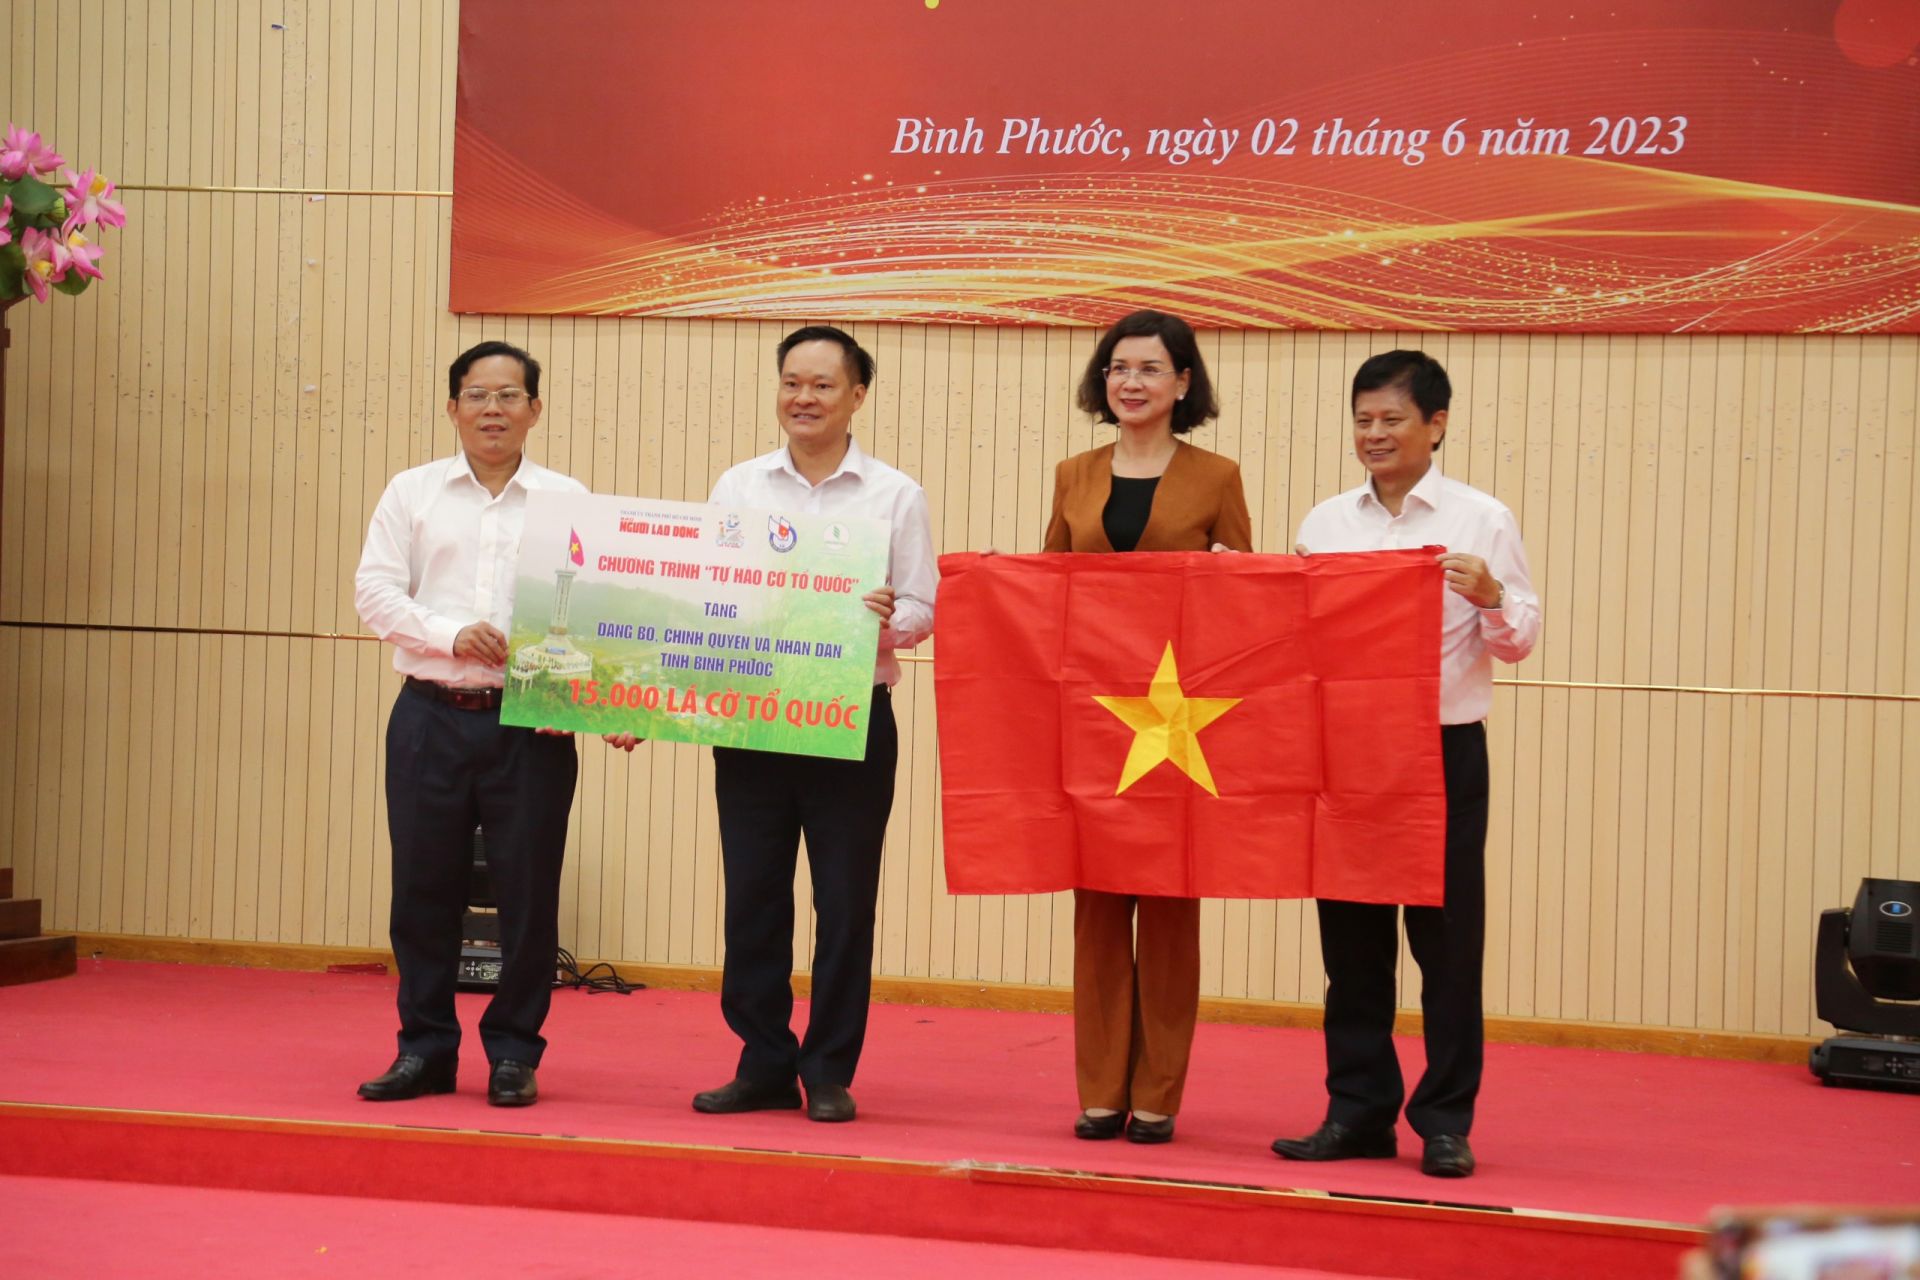 Bình Phước: Nhiều hoạt động hướng tới kỷ niệm ngày Báo chí Cách mạng Việt Nam